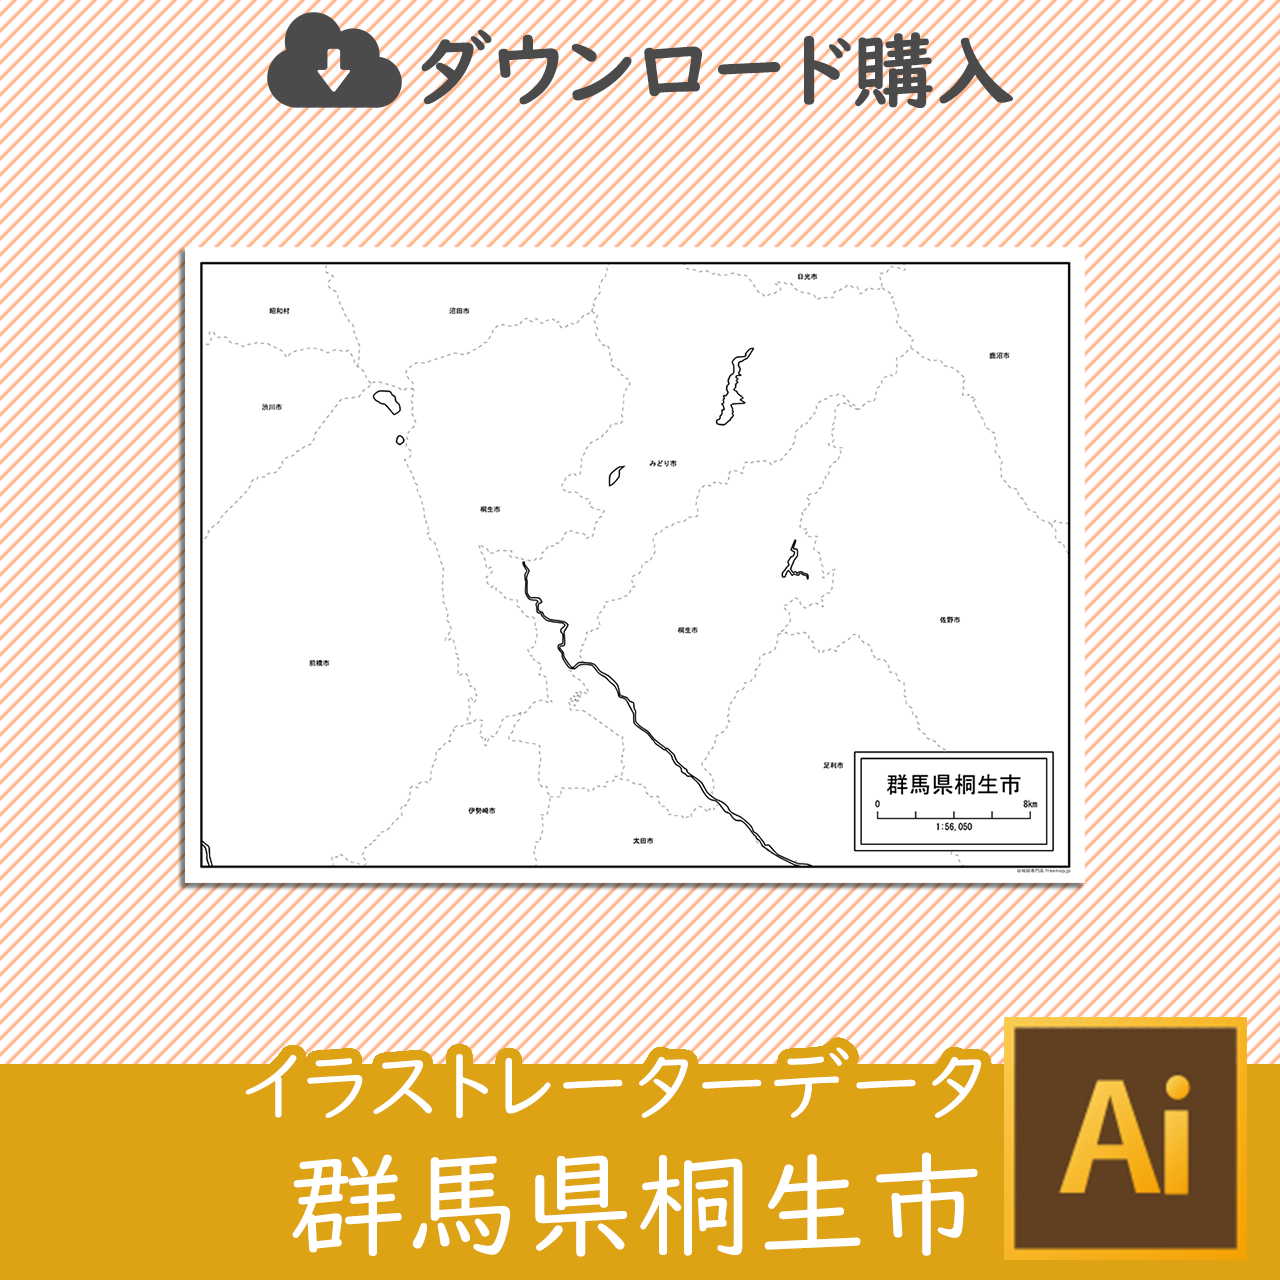 桐生市のaiデータのサムネイル画像